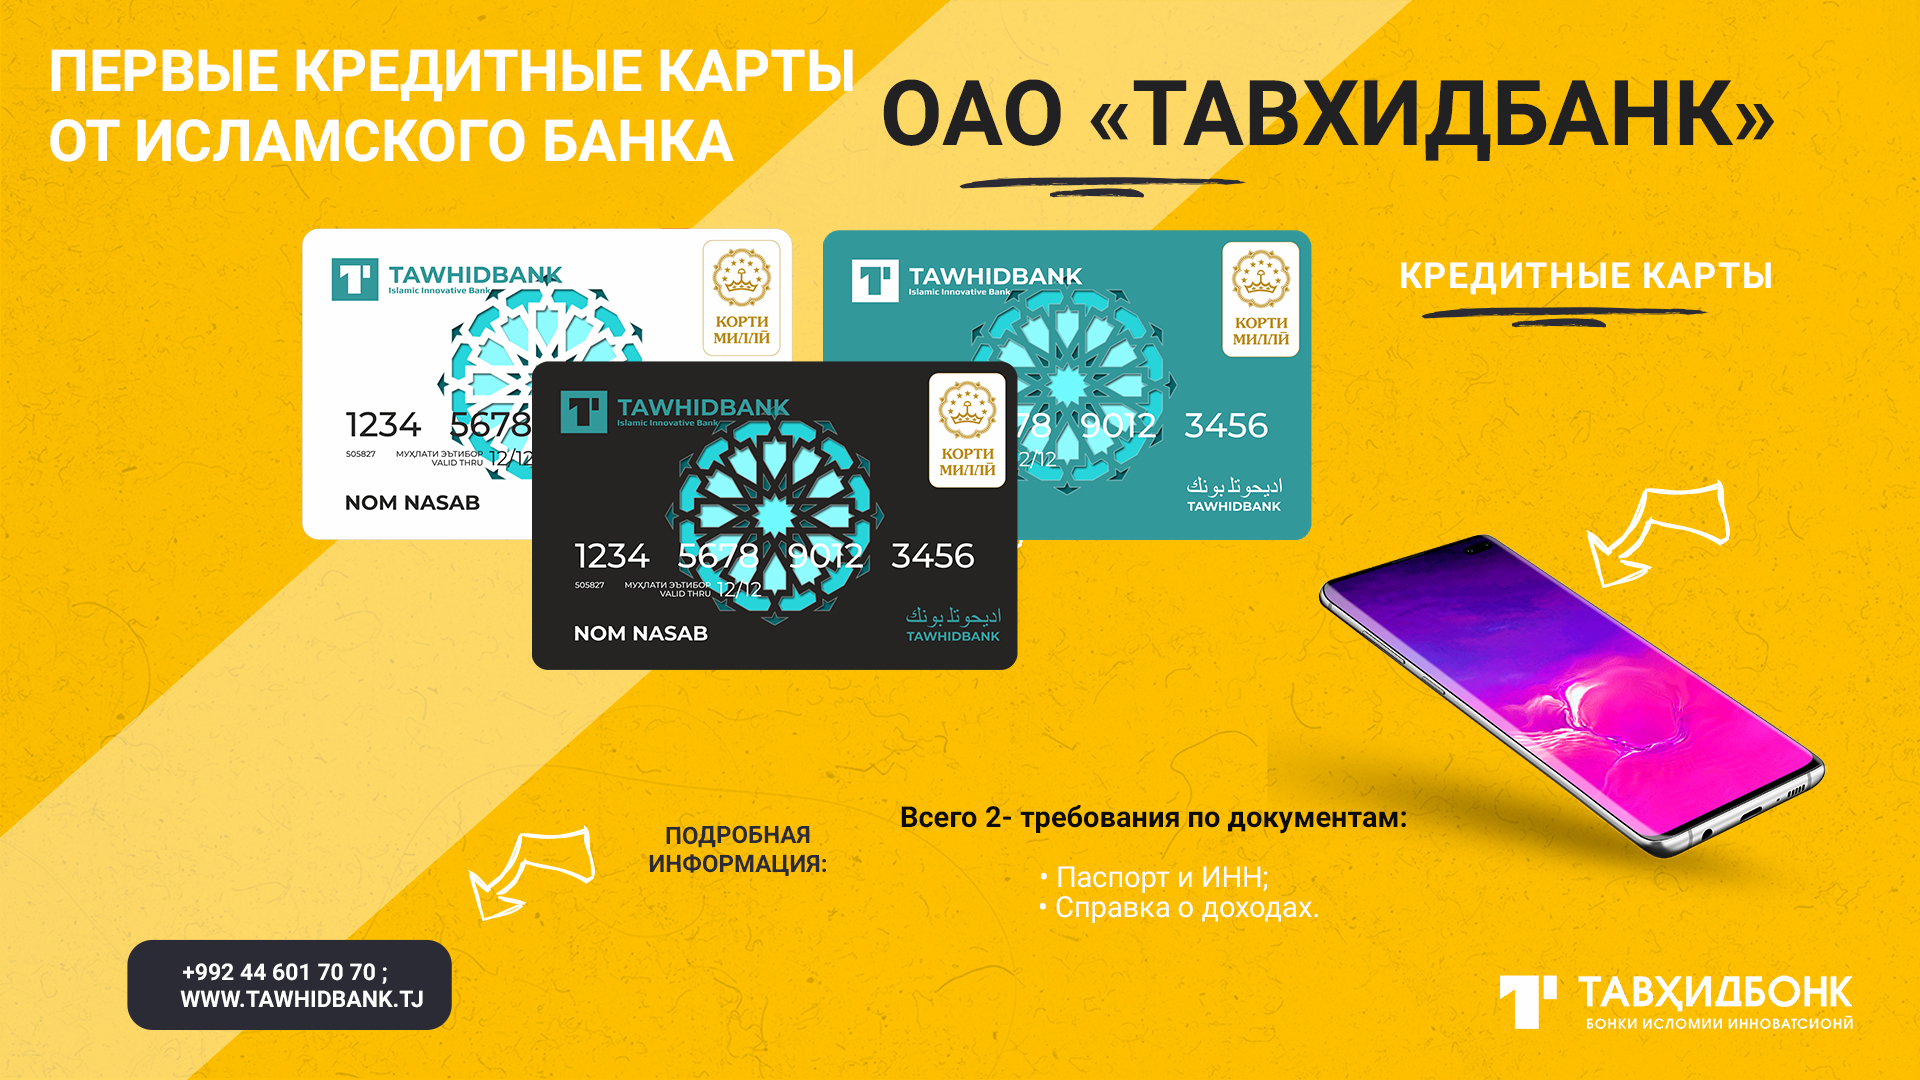 Впервые на рынке Таджикистана  кредитные карты от исламского банка ОАО «Тавхидбанк»